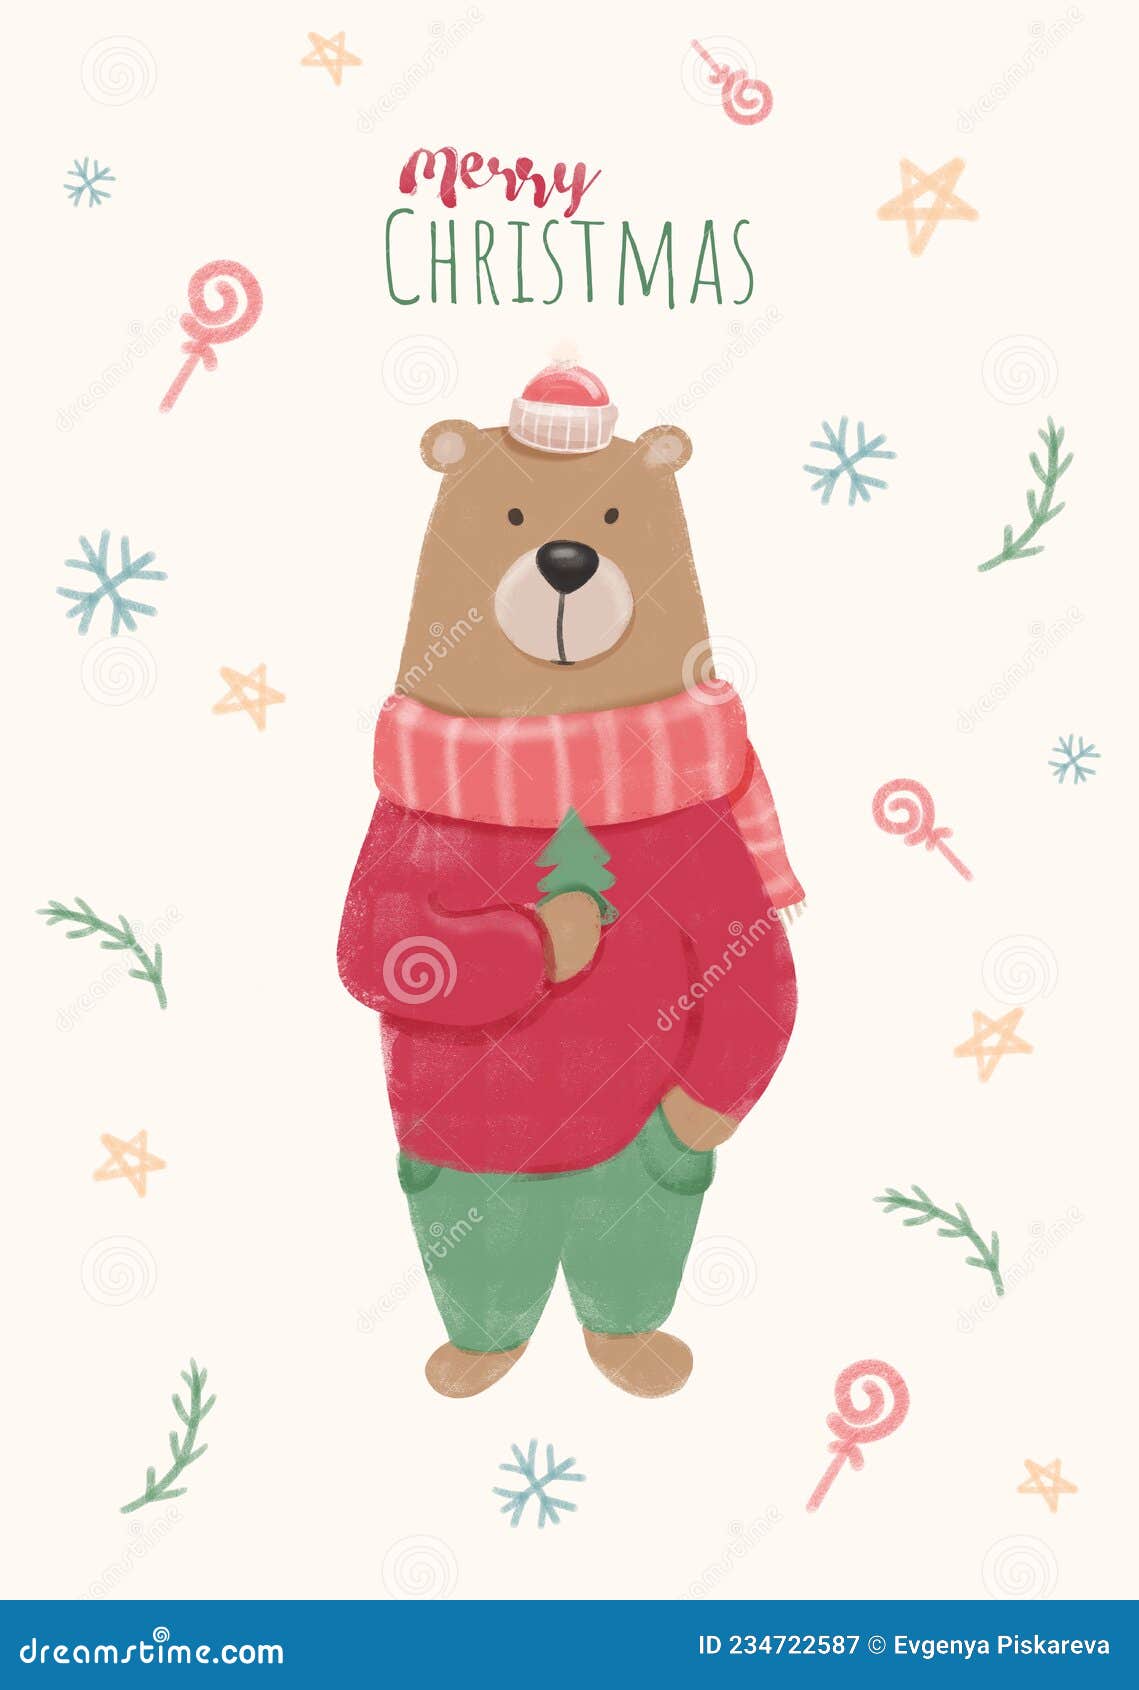 圣诞节、泰迪熊、熊 - 免费可商用图片 - cc0.cn